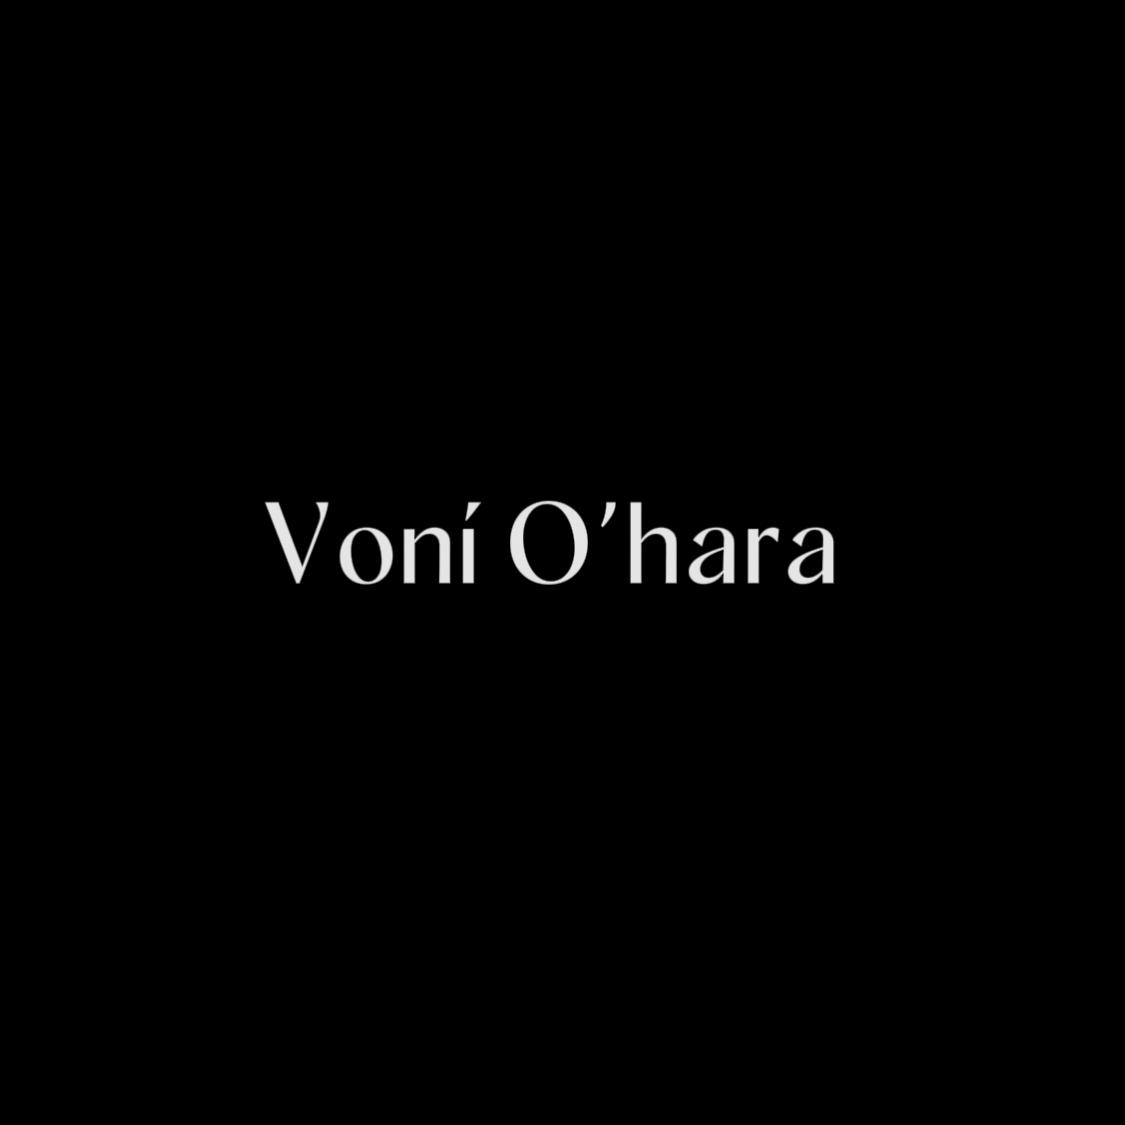 Voní O’hara 's images